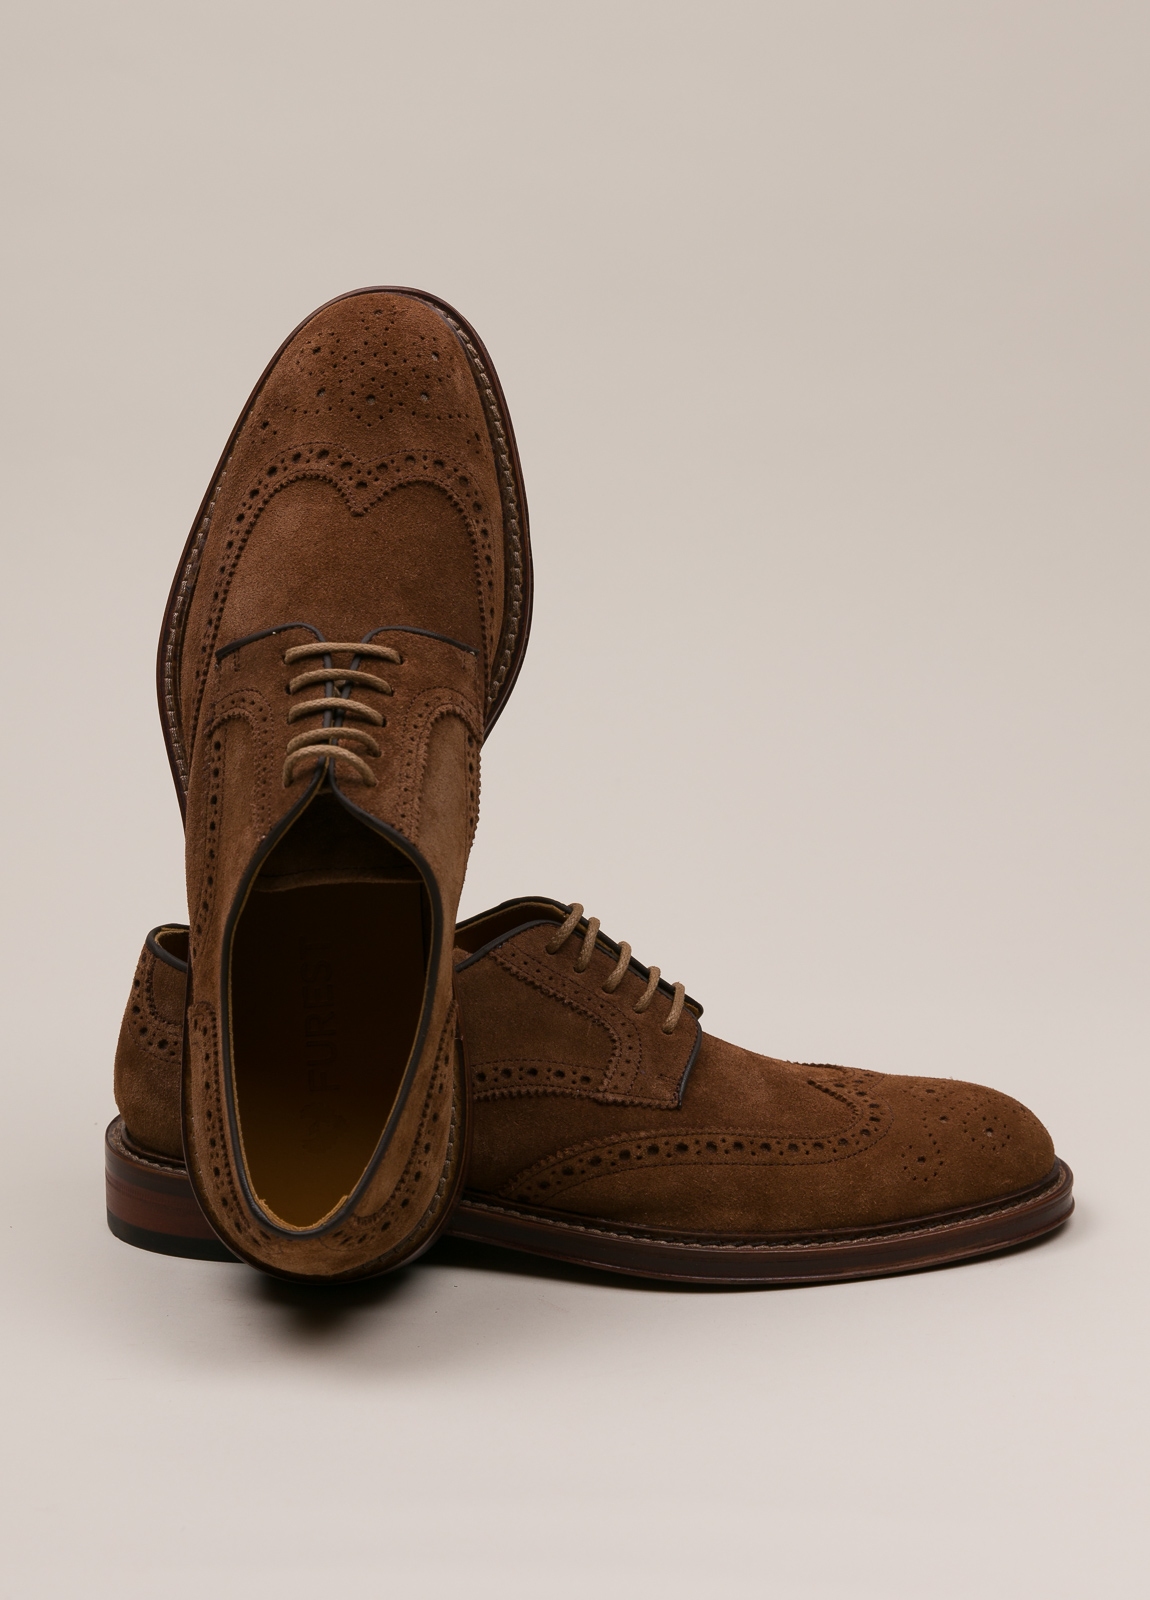 Zapato sport wear furest colección marrón - Ítem2